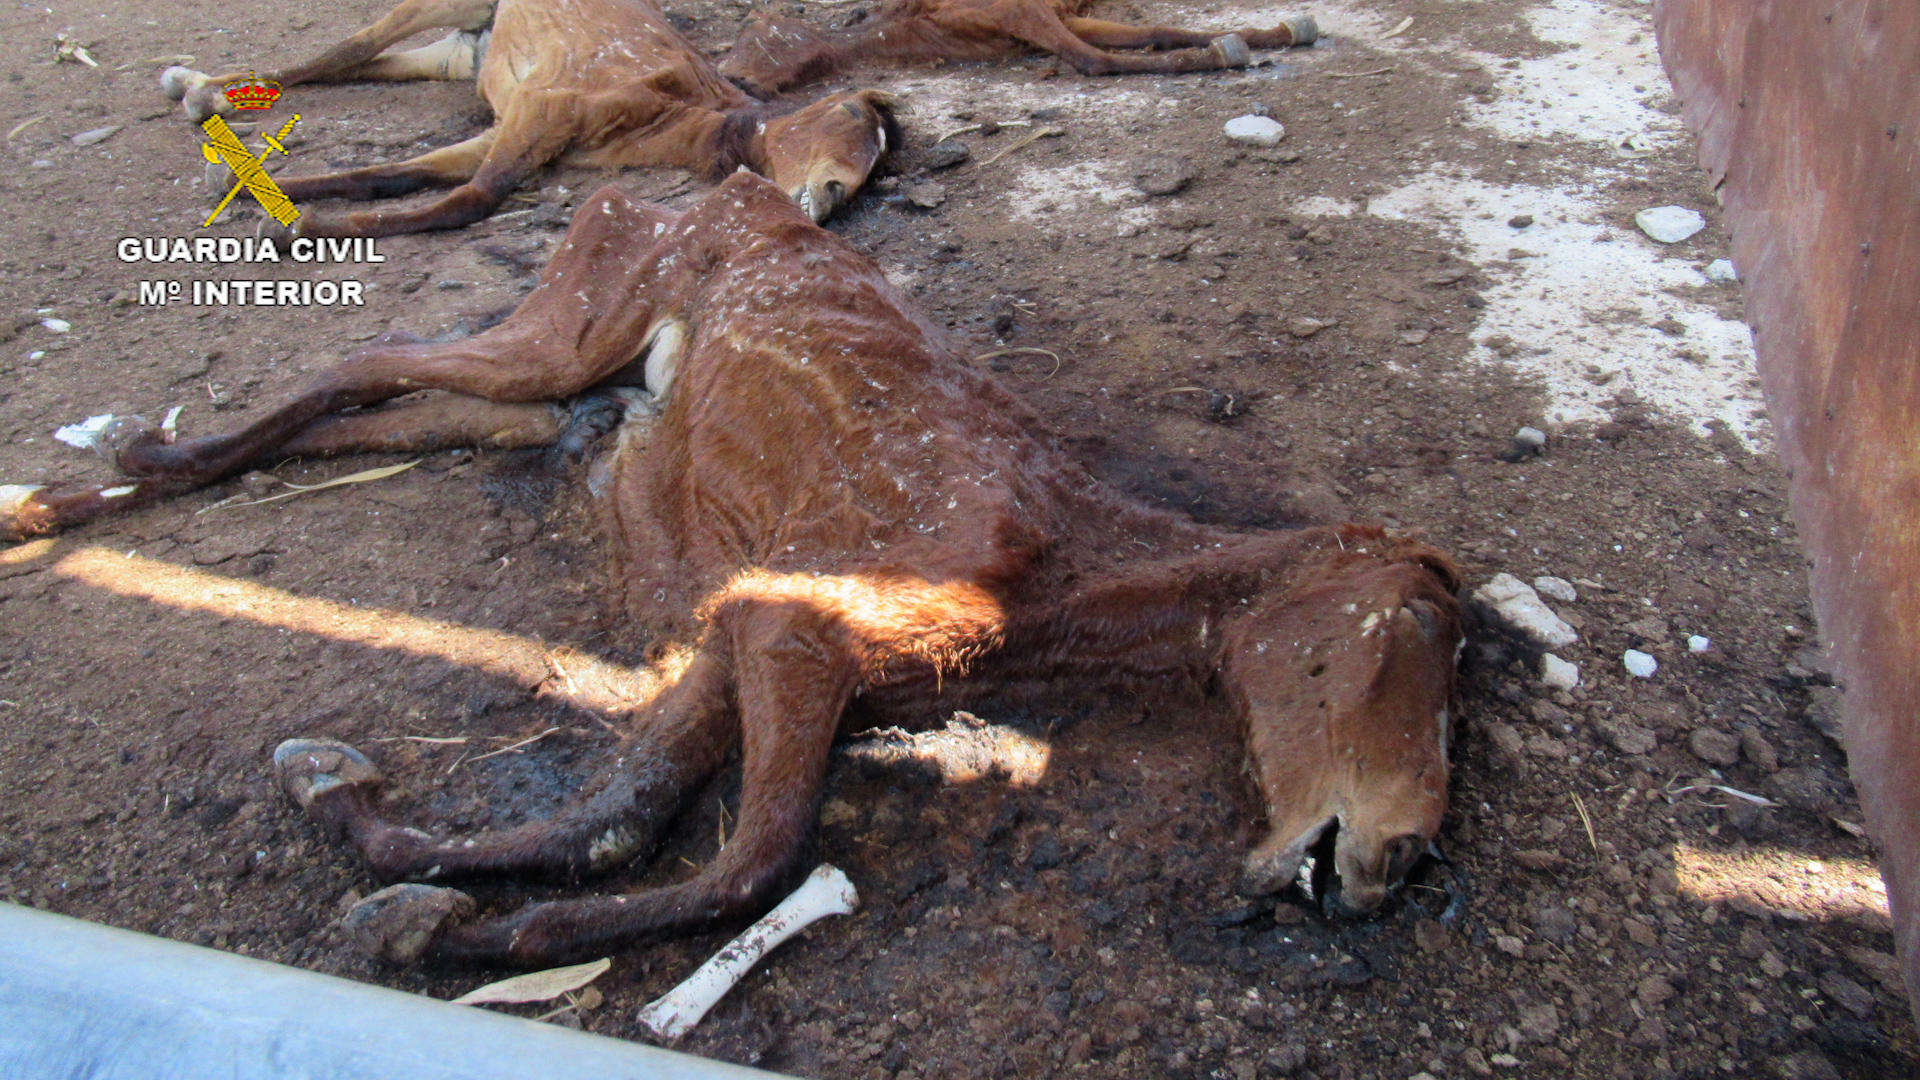 Un hombre está siendo investigado como presunto autor de un caso de maltrato animal al tener 31 caballos muertos en una granja de Murcia,. EFE/Guardia Civil SOLO USO EDITORIAL/SOLO DISPONIBLE PARA ILUSTRAR LA NOTICIA QUE ACOMPAÑA (CRÉDITO OBLIGATORIO)
